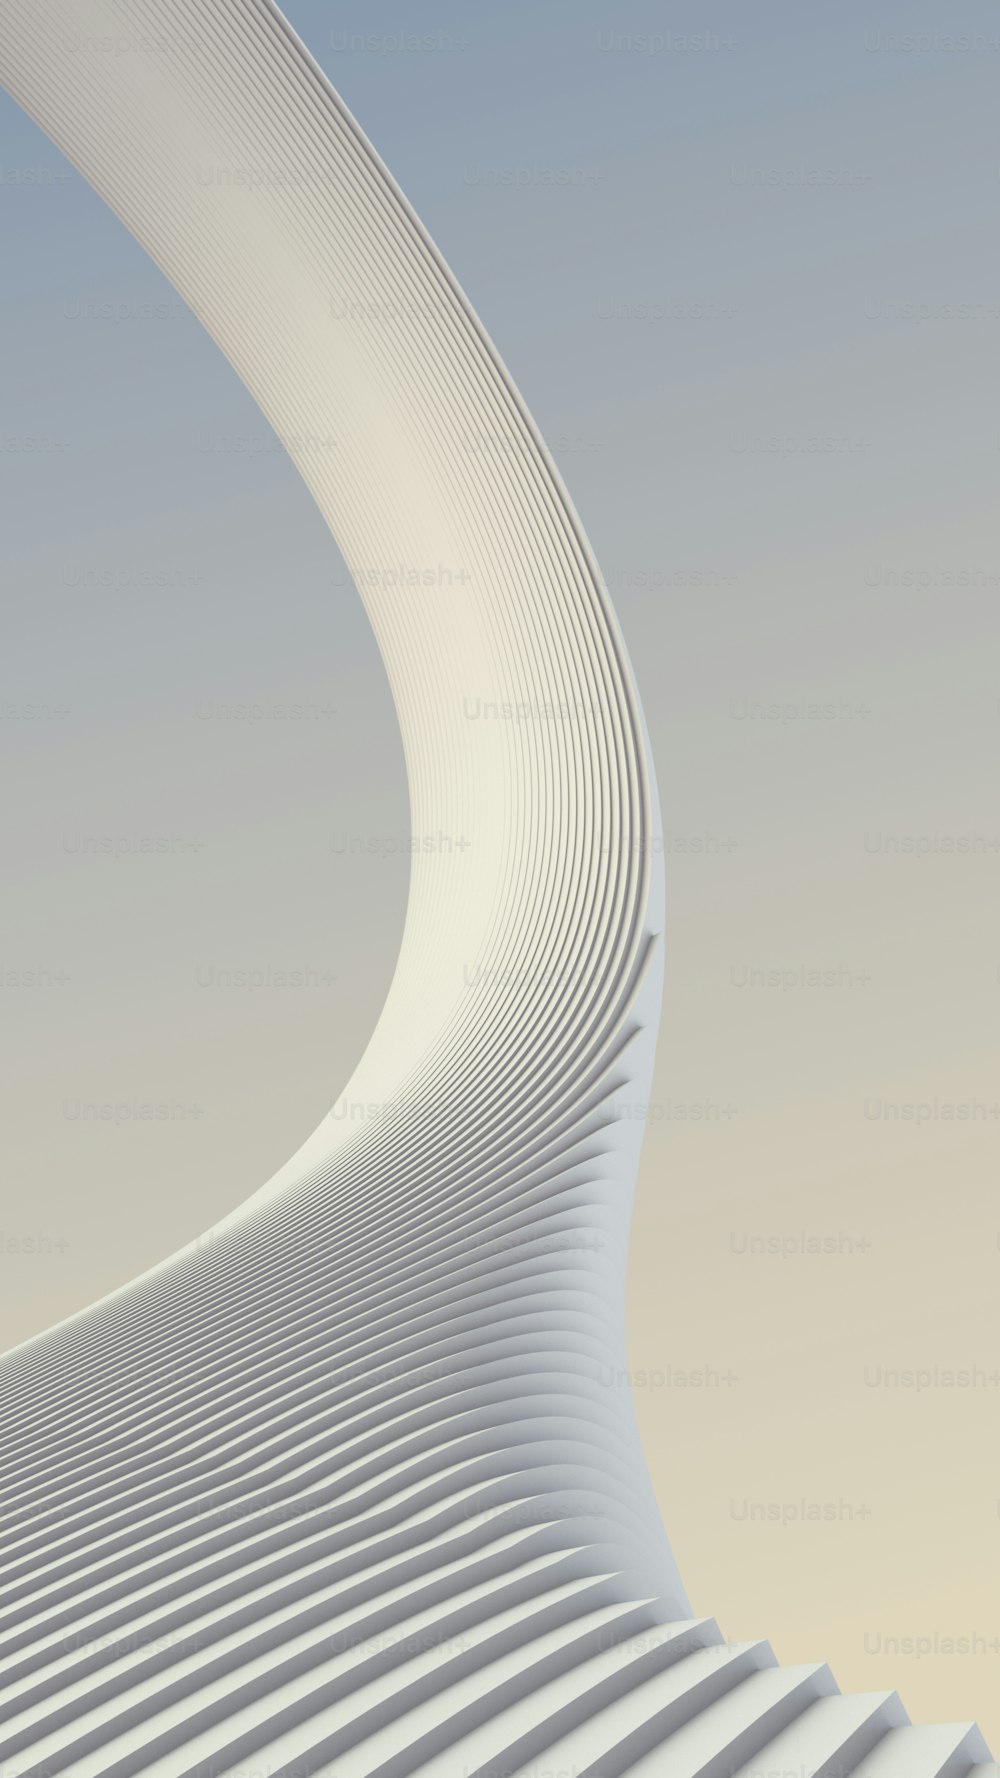 Fundo de padrão futurista arquitetônico de listras brancas. Ilustração de renderização 3D